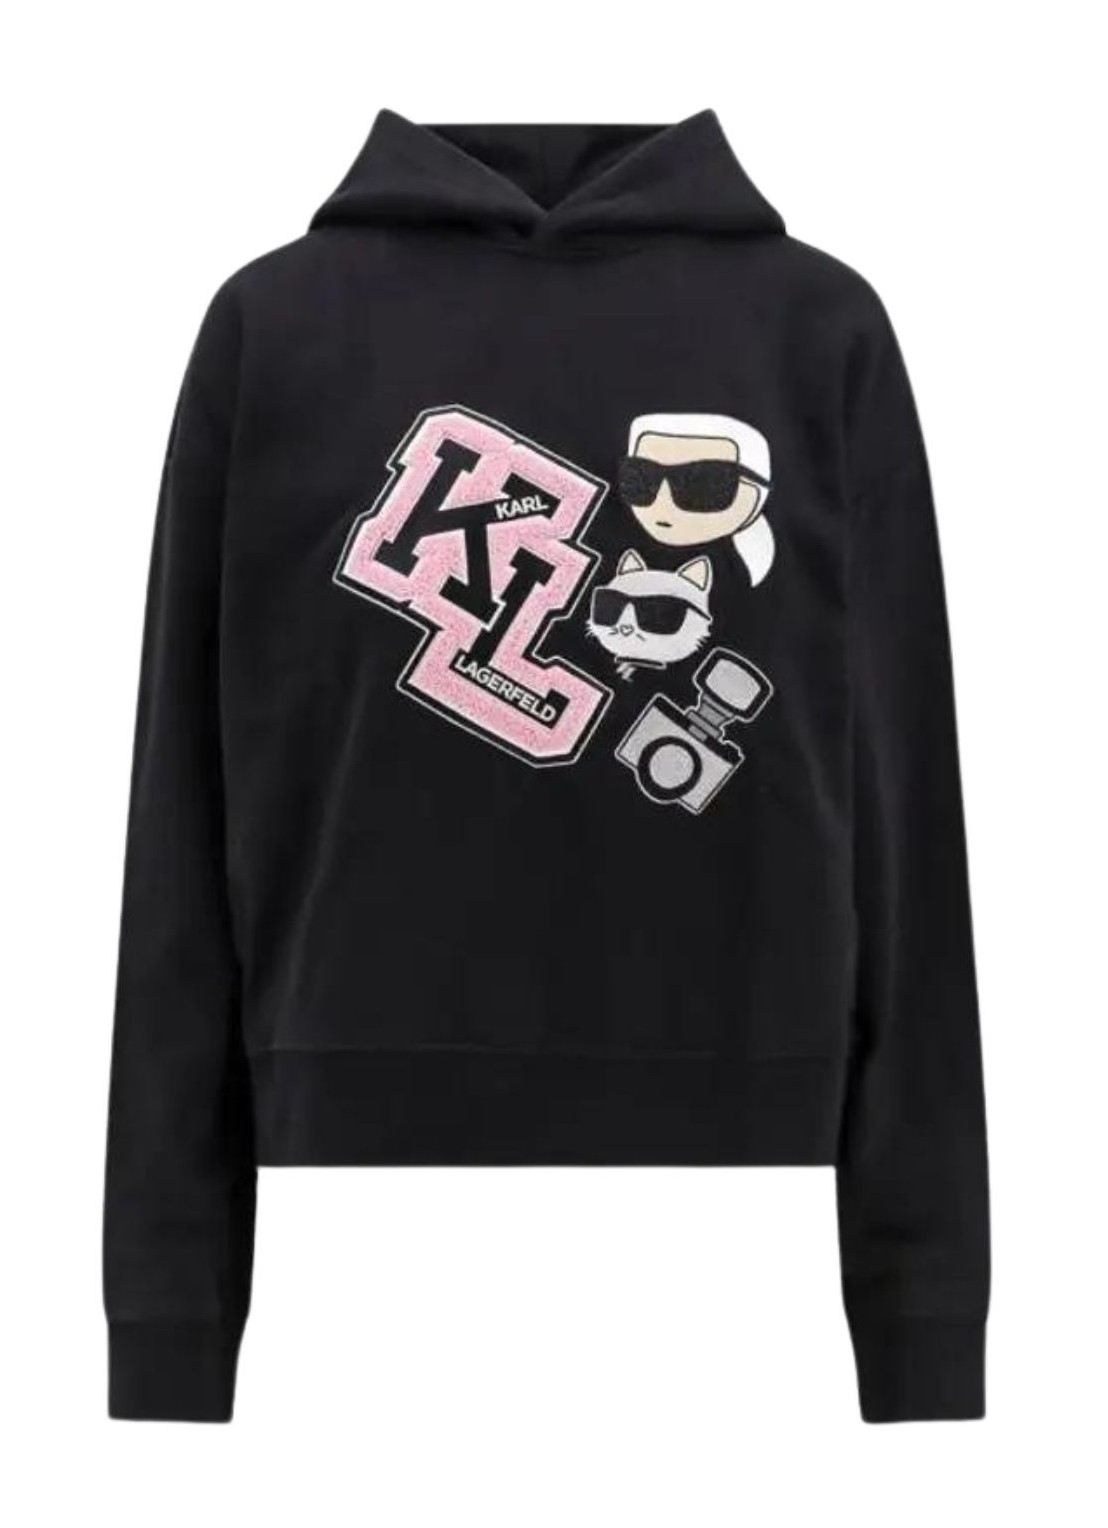 Sudadera karl lagerfeld sweater woman ikonik varsity hoodie 240w1813 999 talla XL
 